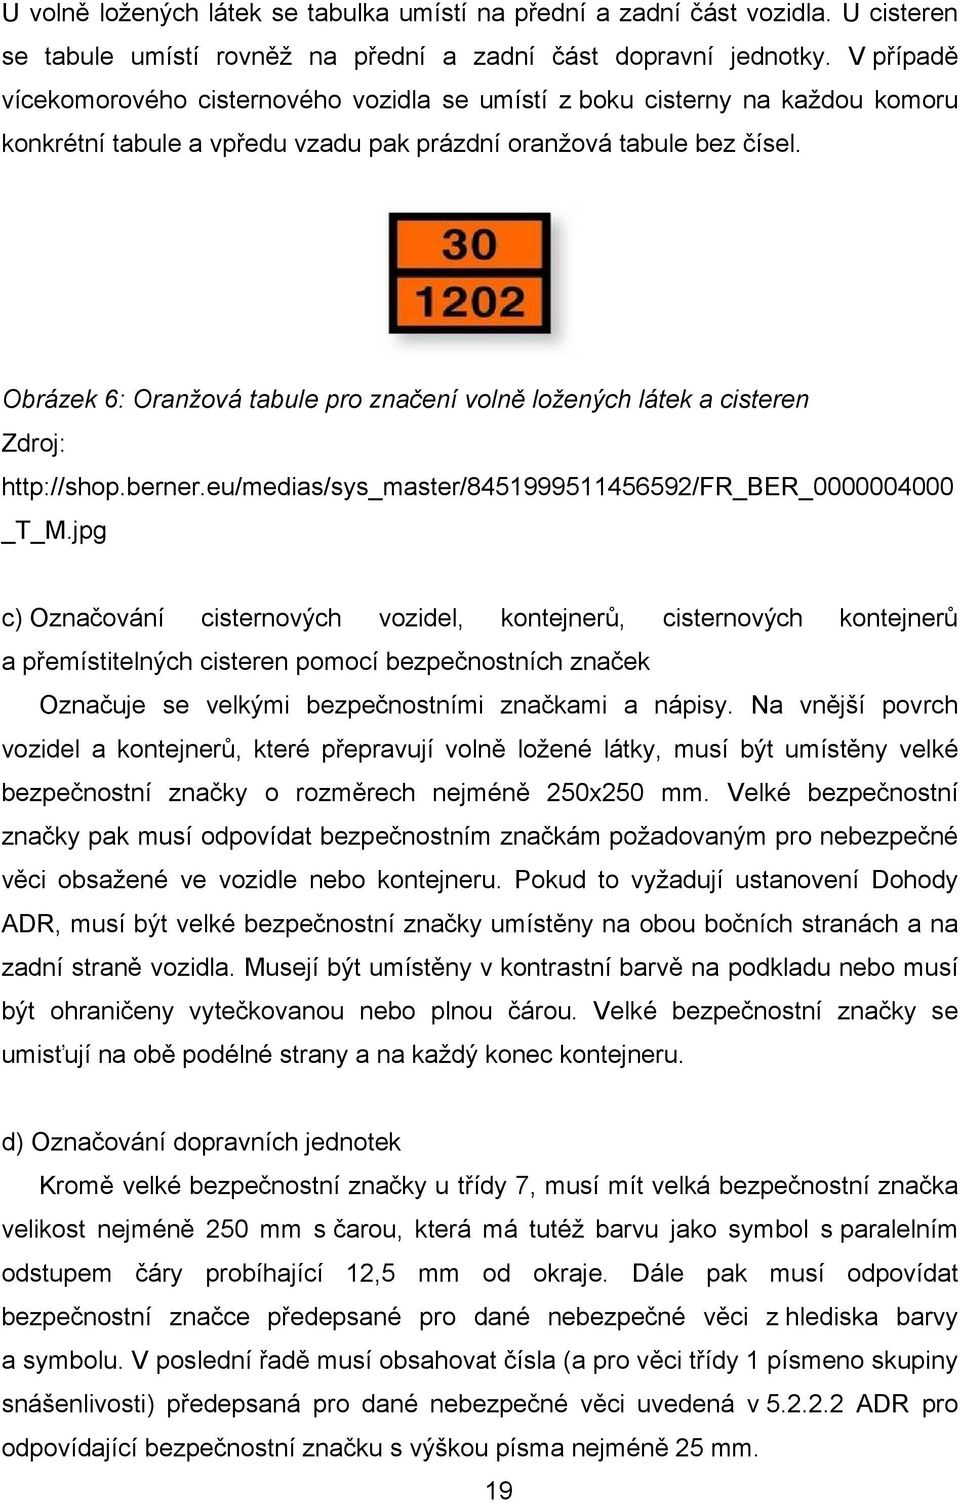 Obrázek 6: Oranžová tabule pro značení volně ložených látek a cisteren Zdroj: http://shop.berner.eu/medias/sys_master/8451999511456592/fr_ber_0000004000 _T_M.